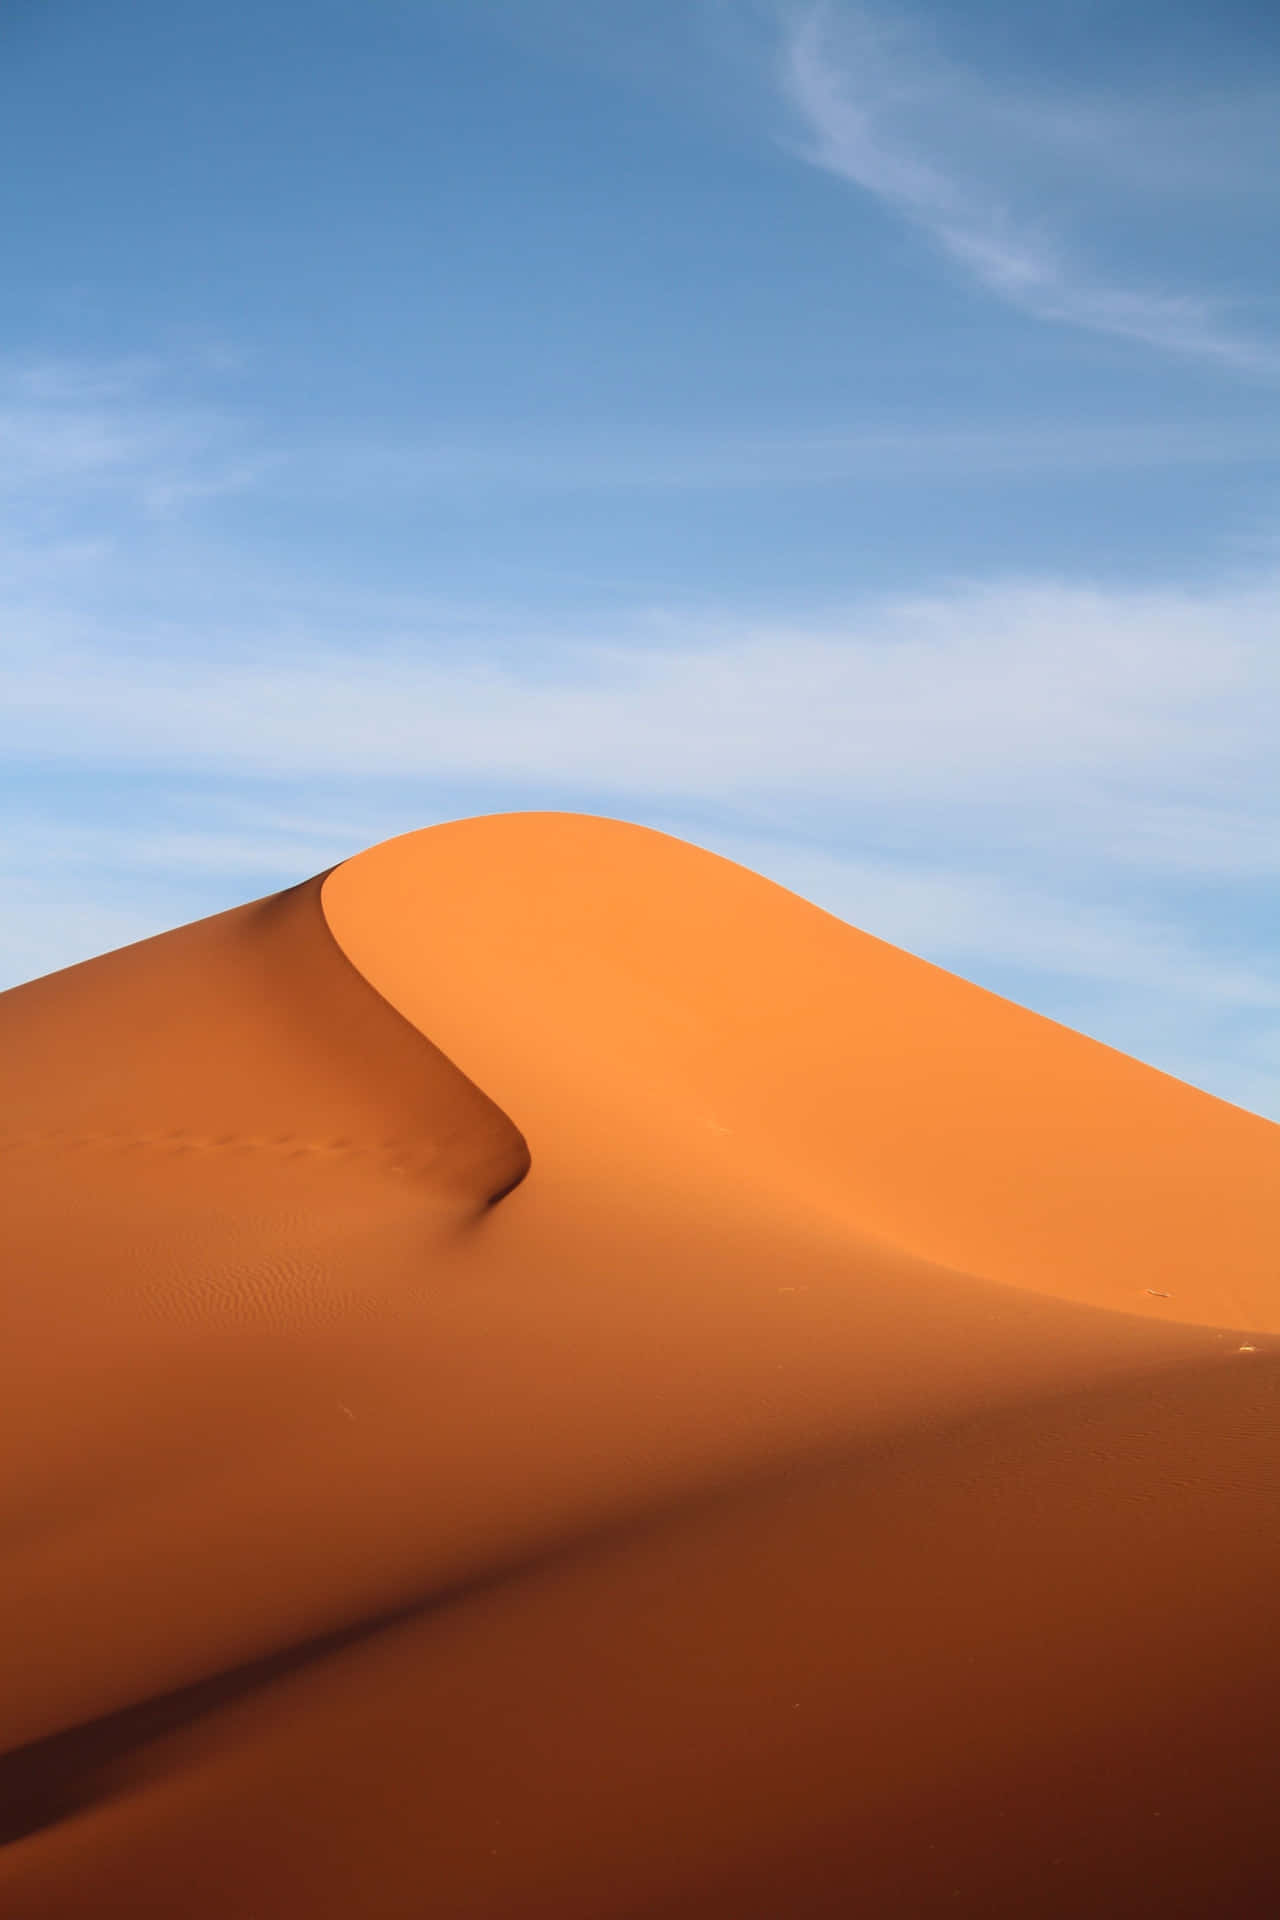 Cieloazul En El Desierto De Namib, Iphone. Fondo de pantalla